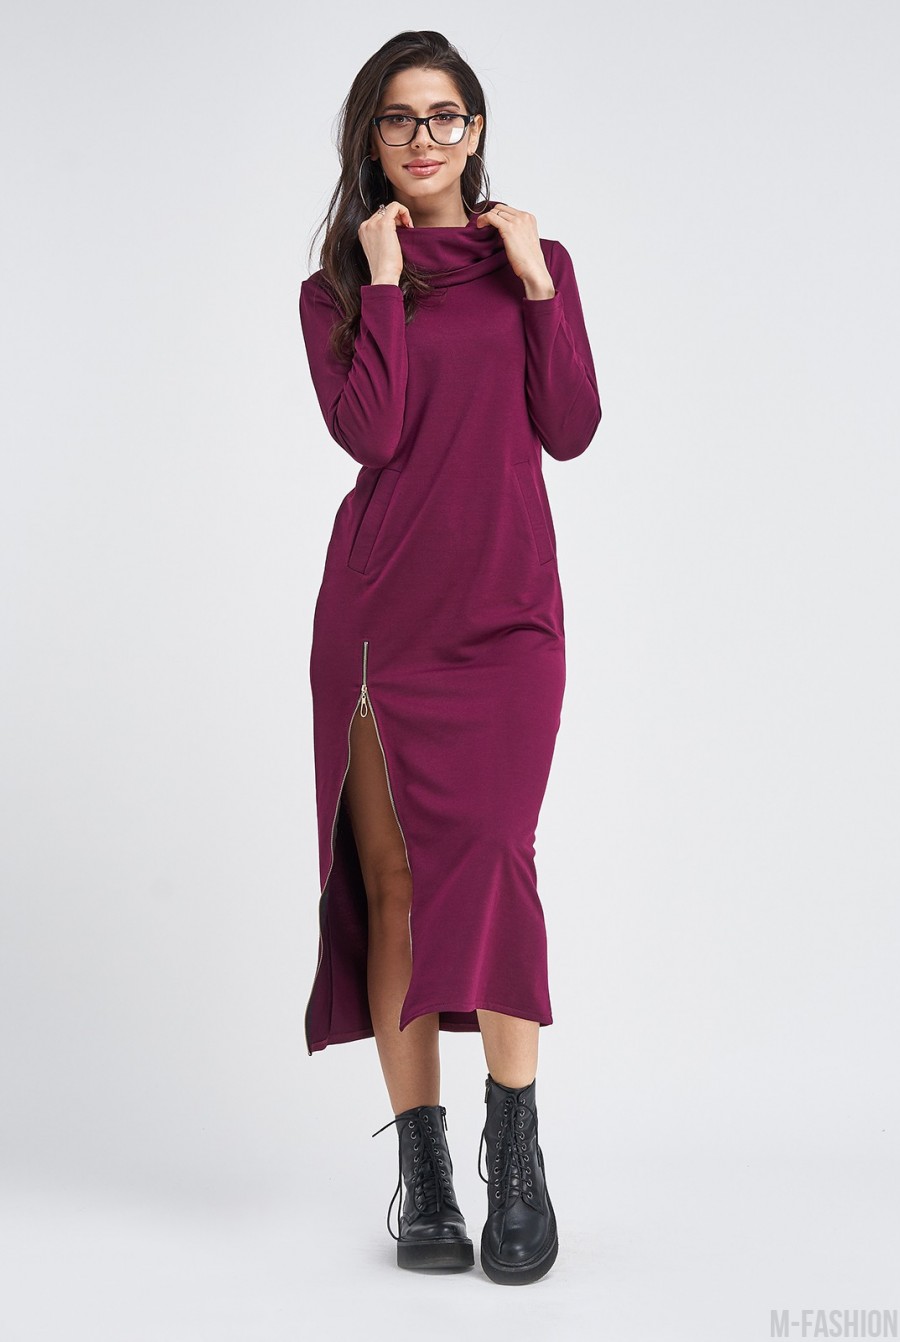 Удлиненное трикотажное фиолетовое платье с боковой молнией - Фото 1